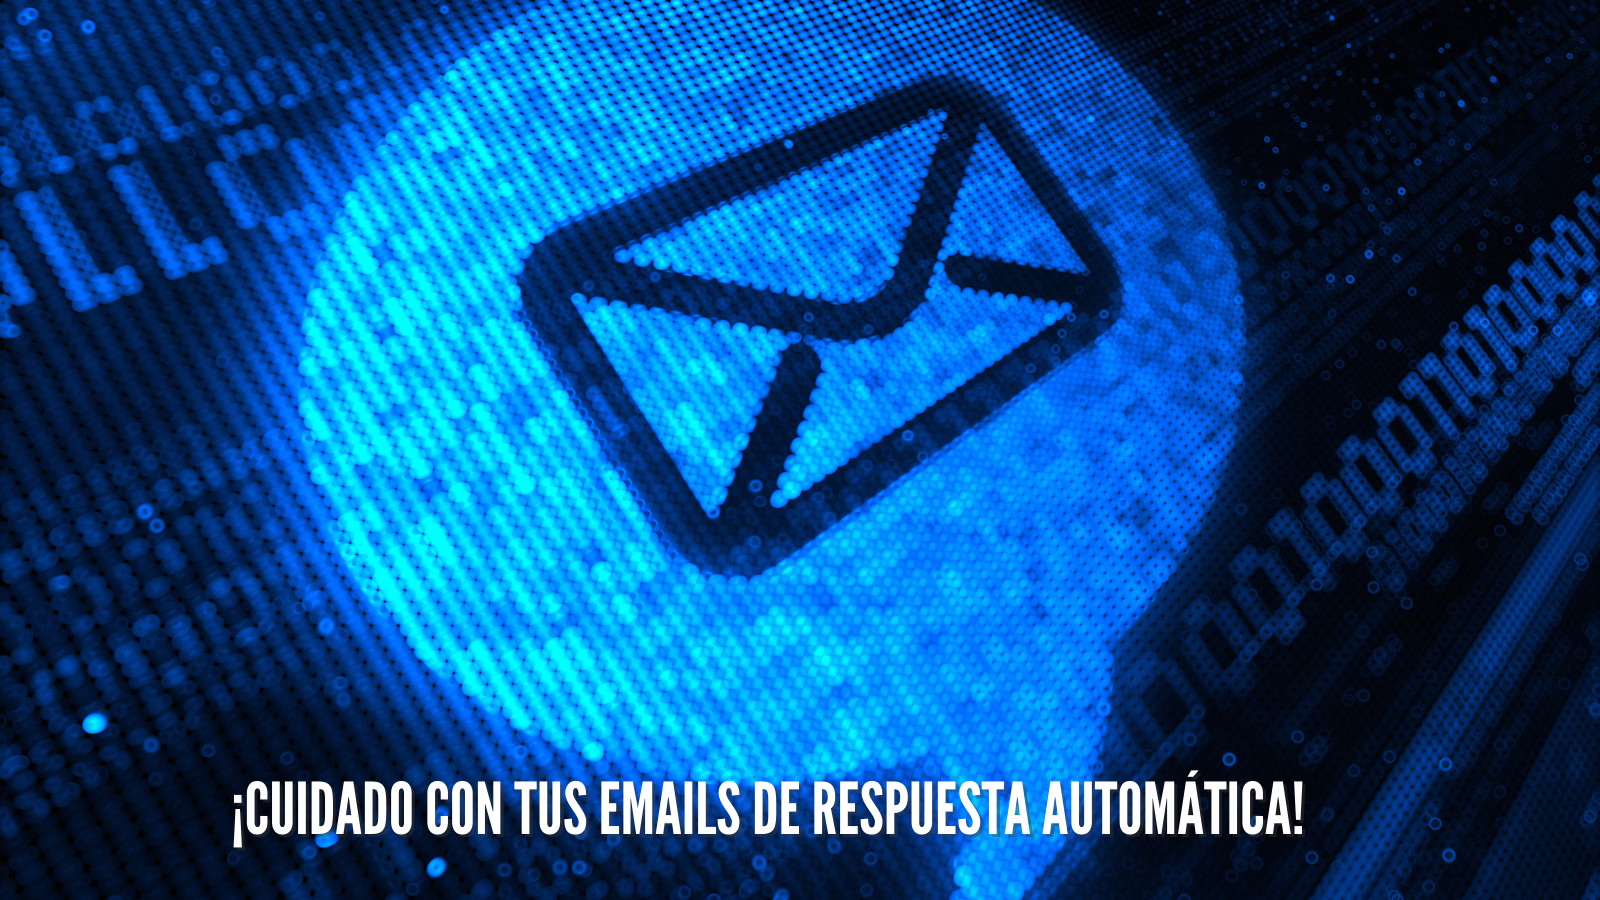 Ciberconsejo: emails automáticos